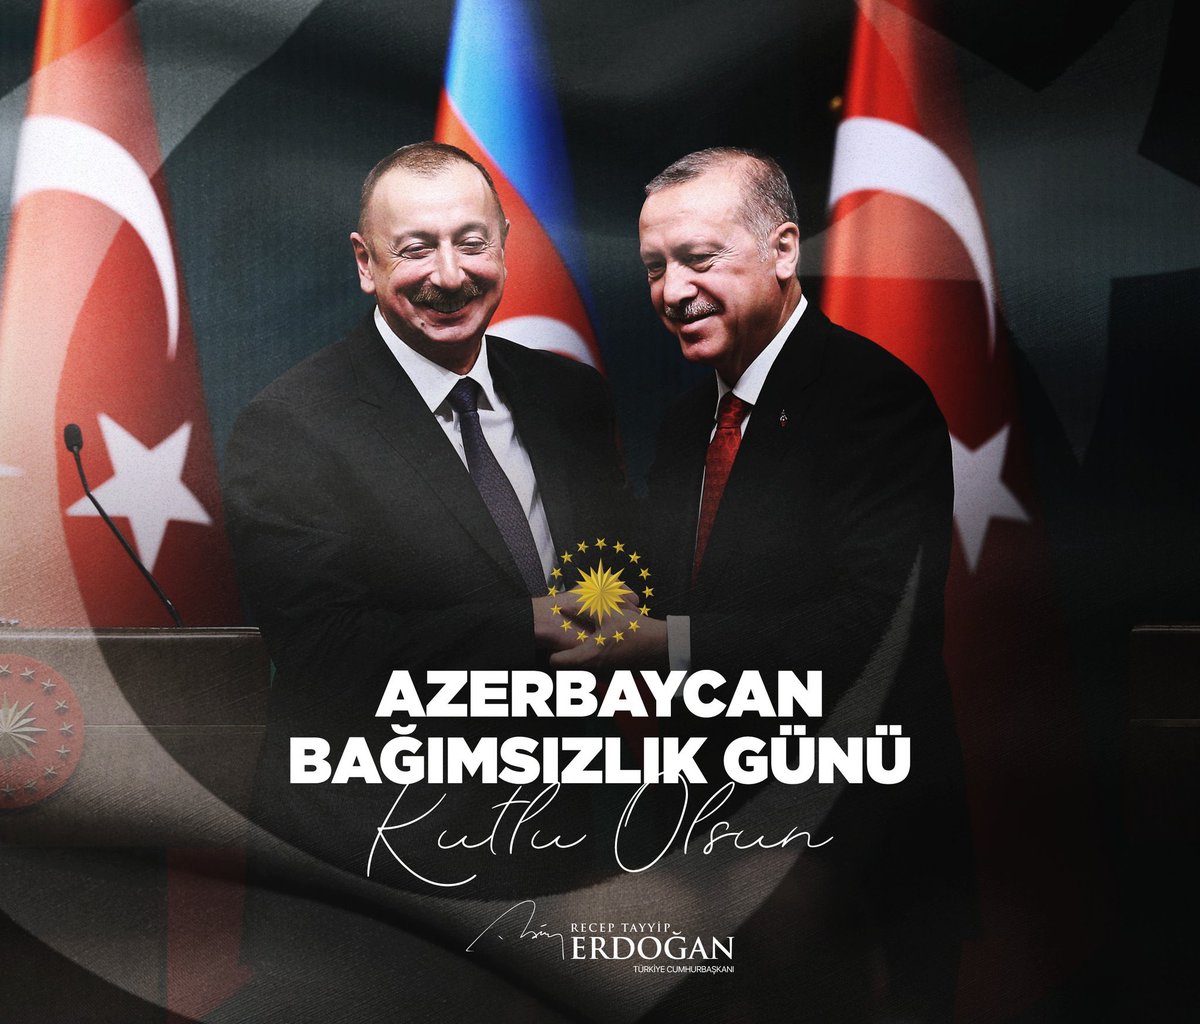 İki Devlet bir millet
Can Gardaşımız 🇦🇿🇦🇿🇹🇷🇹🇷
Birlikte aynı hilali, aynı kültürü, aynı milliyeti gururla taşıdığımız Can #Azerbaycan'ın Bağımsızlık Günü kutlu olsun.
18 Ekim 1991

#AzerbaycanBağımsızlıkGünü
#AzarbeycanınYanındayız 
#AzarbaycanYalnızDeğildir